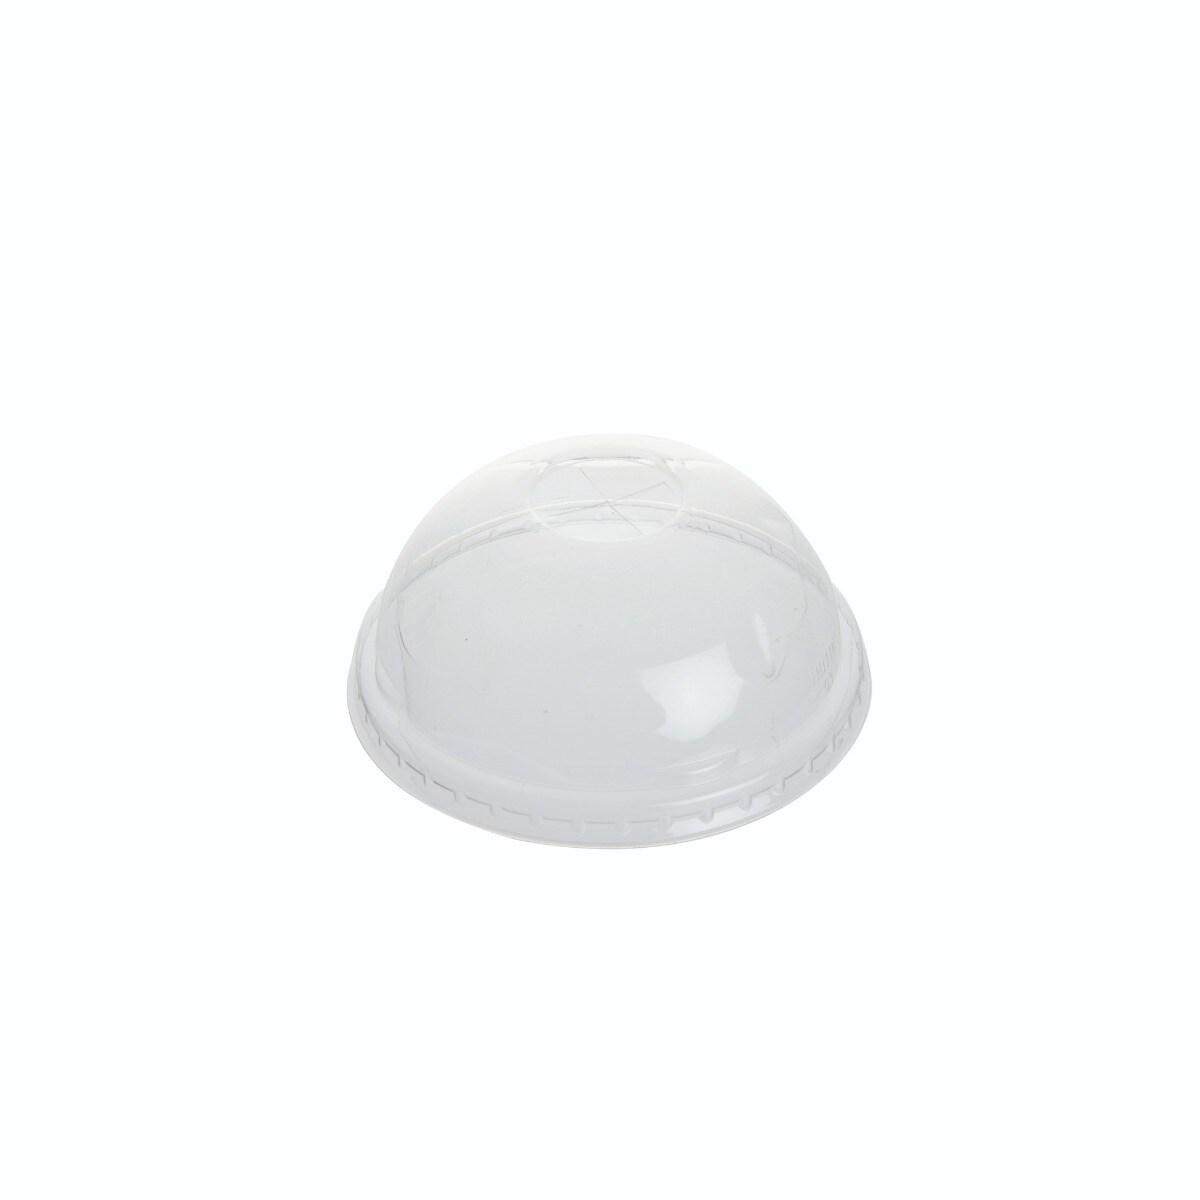 ฝาพลาสติกโดม 1,000ใบ/ลัง TWI/Dome plastic lid, 1,000 pcs / box TWI